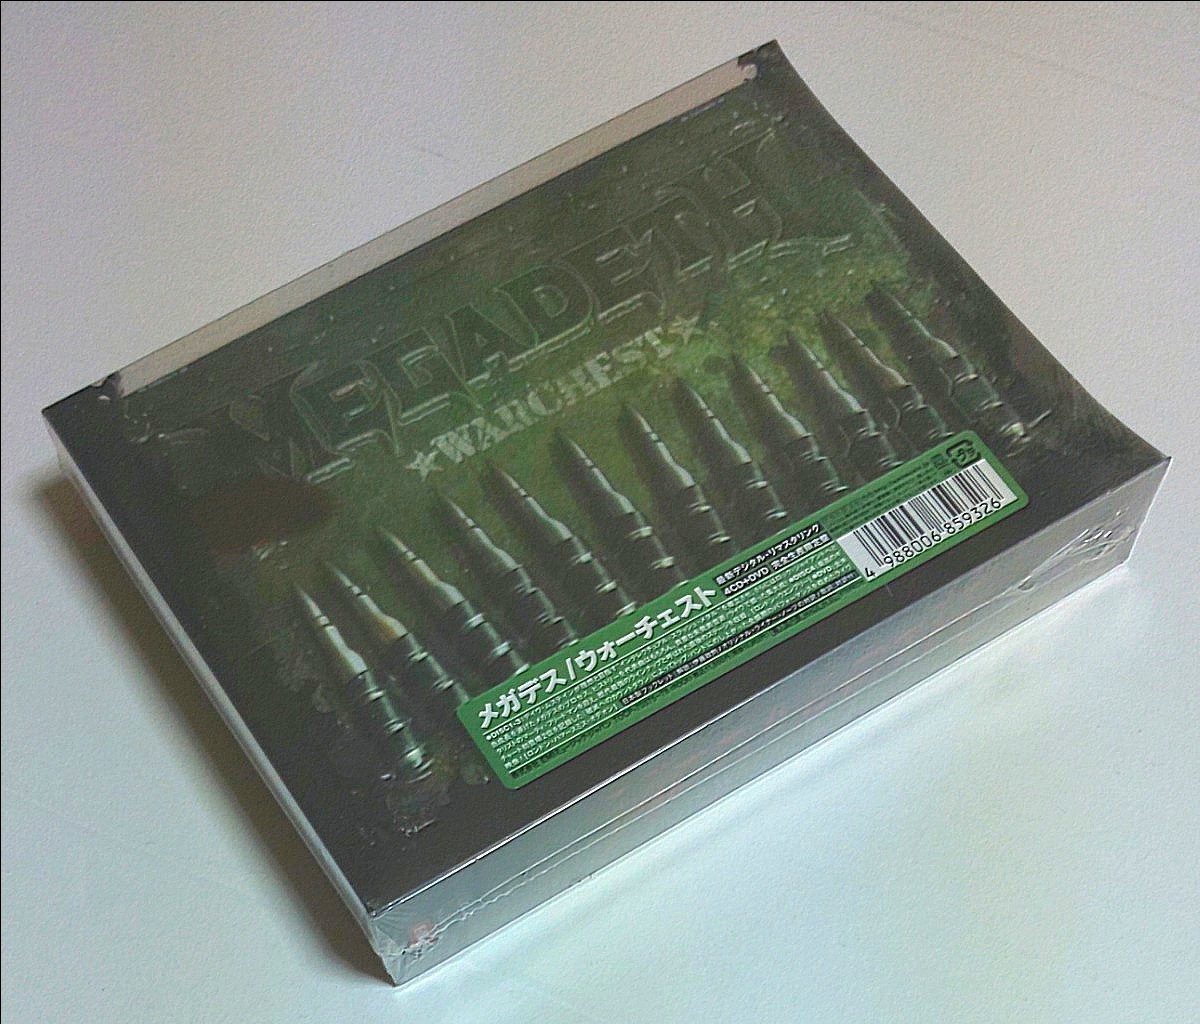 新品 未開封 初回限定盤 5枚組ボックスセット メガデス ウォーチェスト MEGADETH WARCHEST BOX(DVD付)